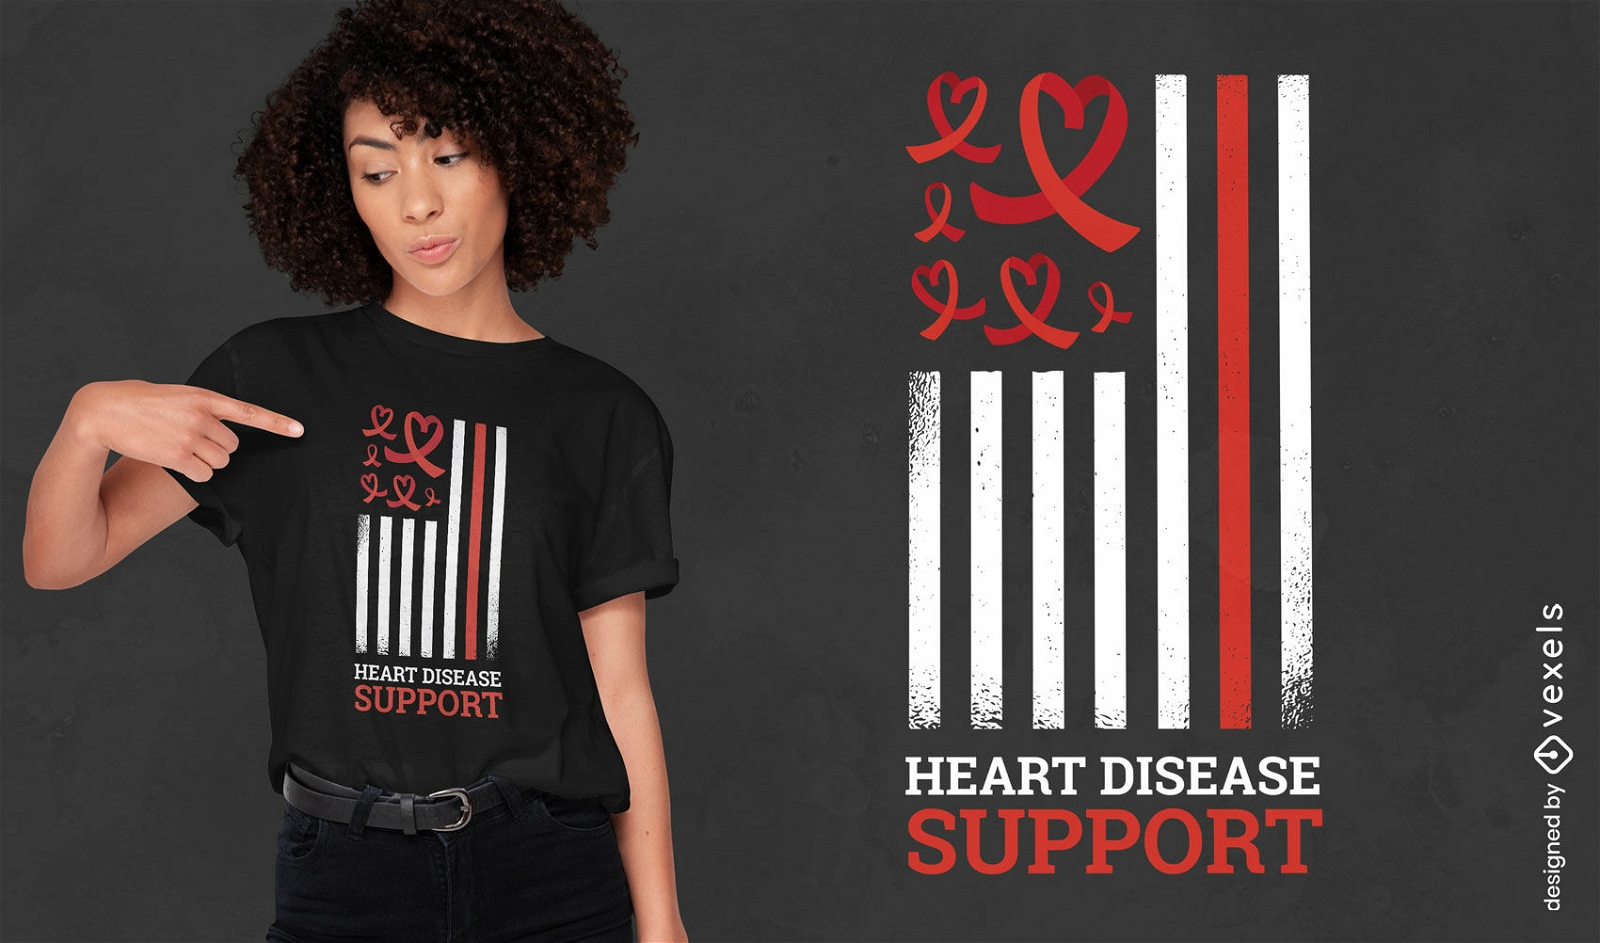 Dise?o de camiseta de apoyo para enfermedades del coraz?n.